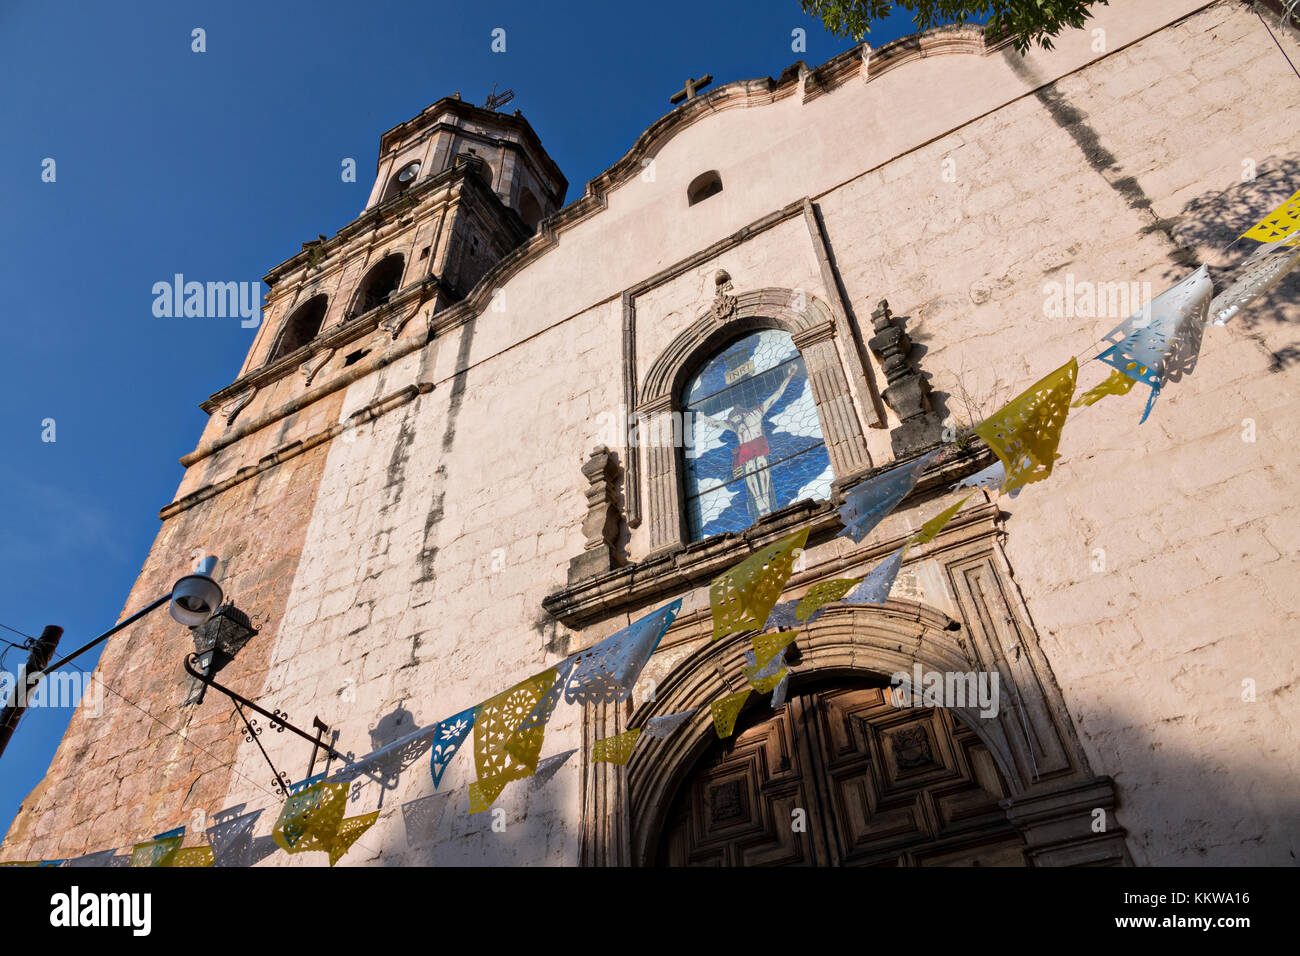 The Parroquia de San Diego de Alcalá church in Quiroga, Michoacan, Mexico. Stock Photo